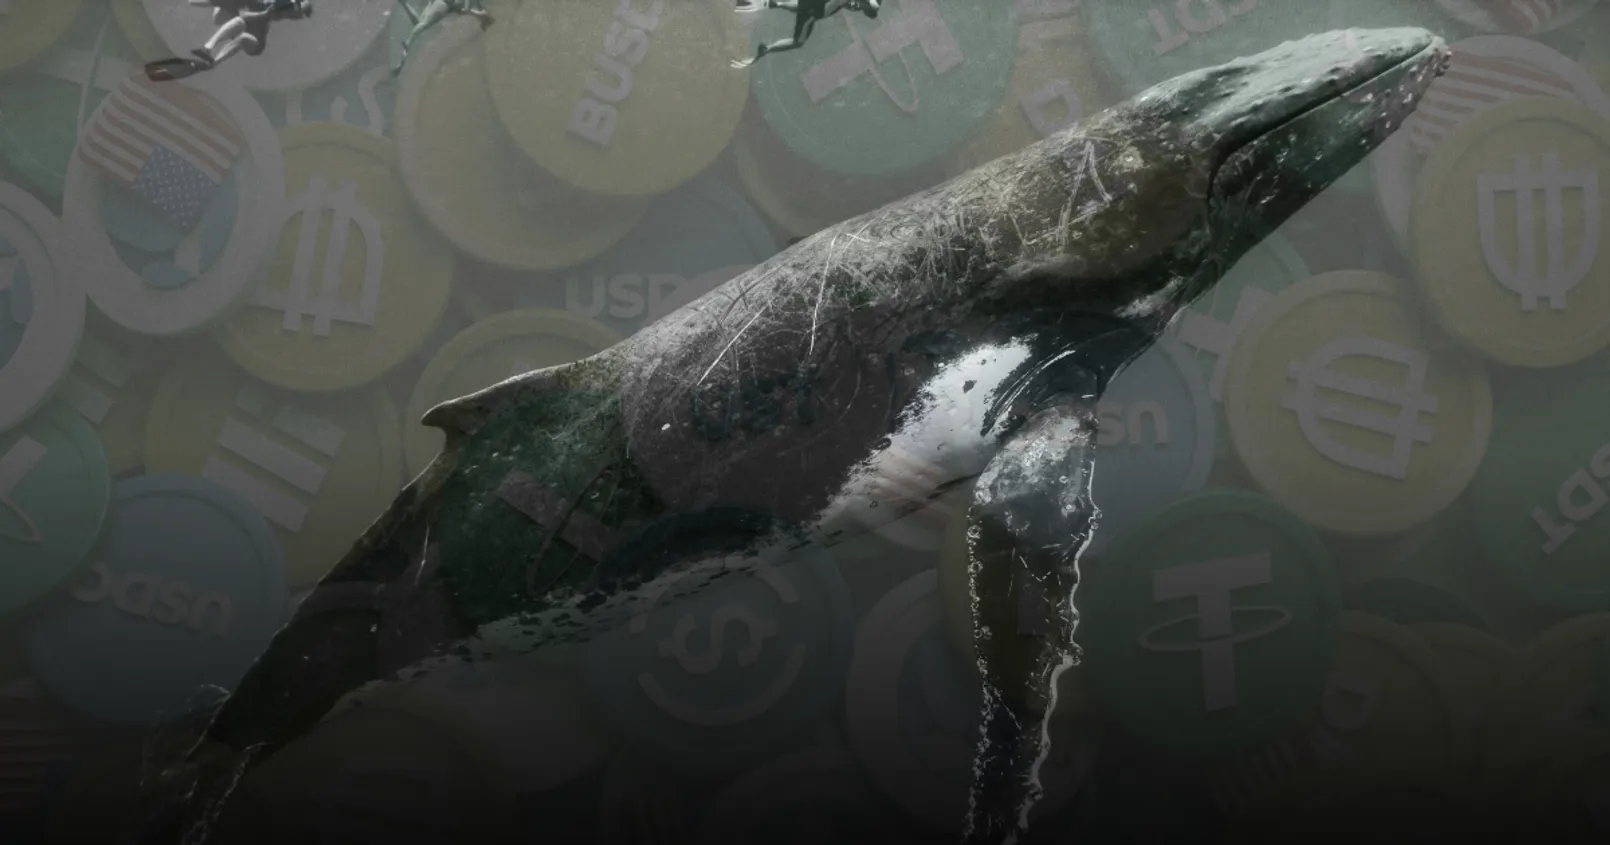 Santiment พบเหล่า 'วาฬยักษ์' หลายตัวแห่ซื้อ Stablecoin เก็บไว้จำนวนมาก